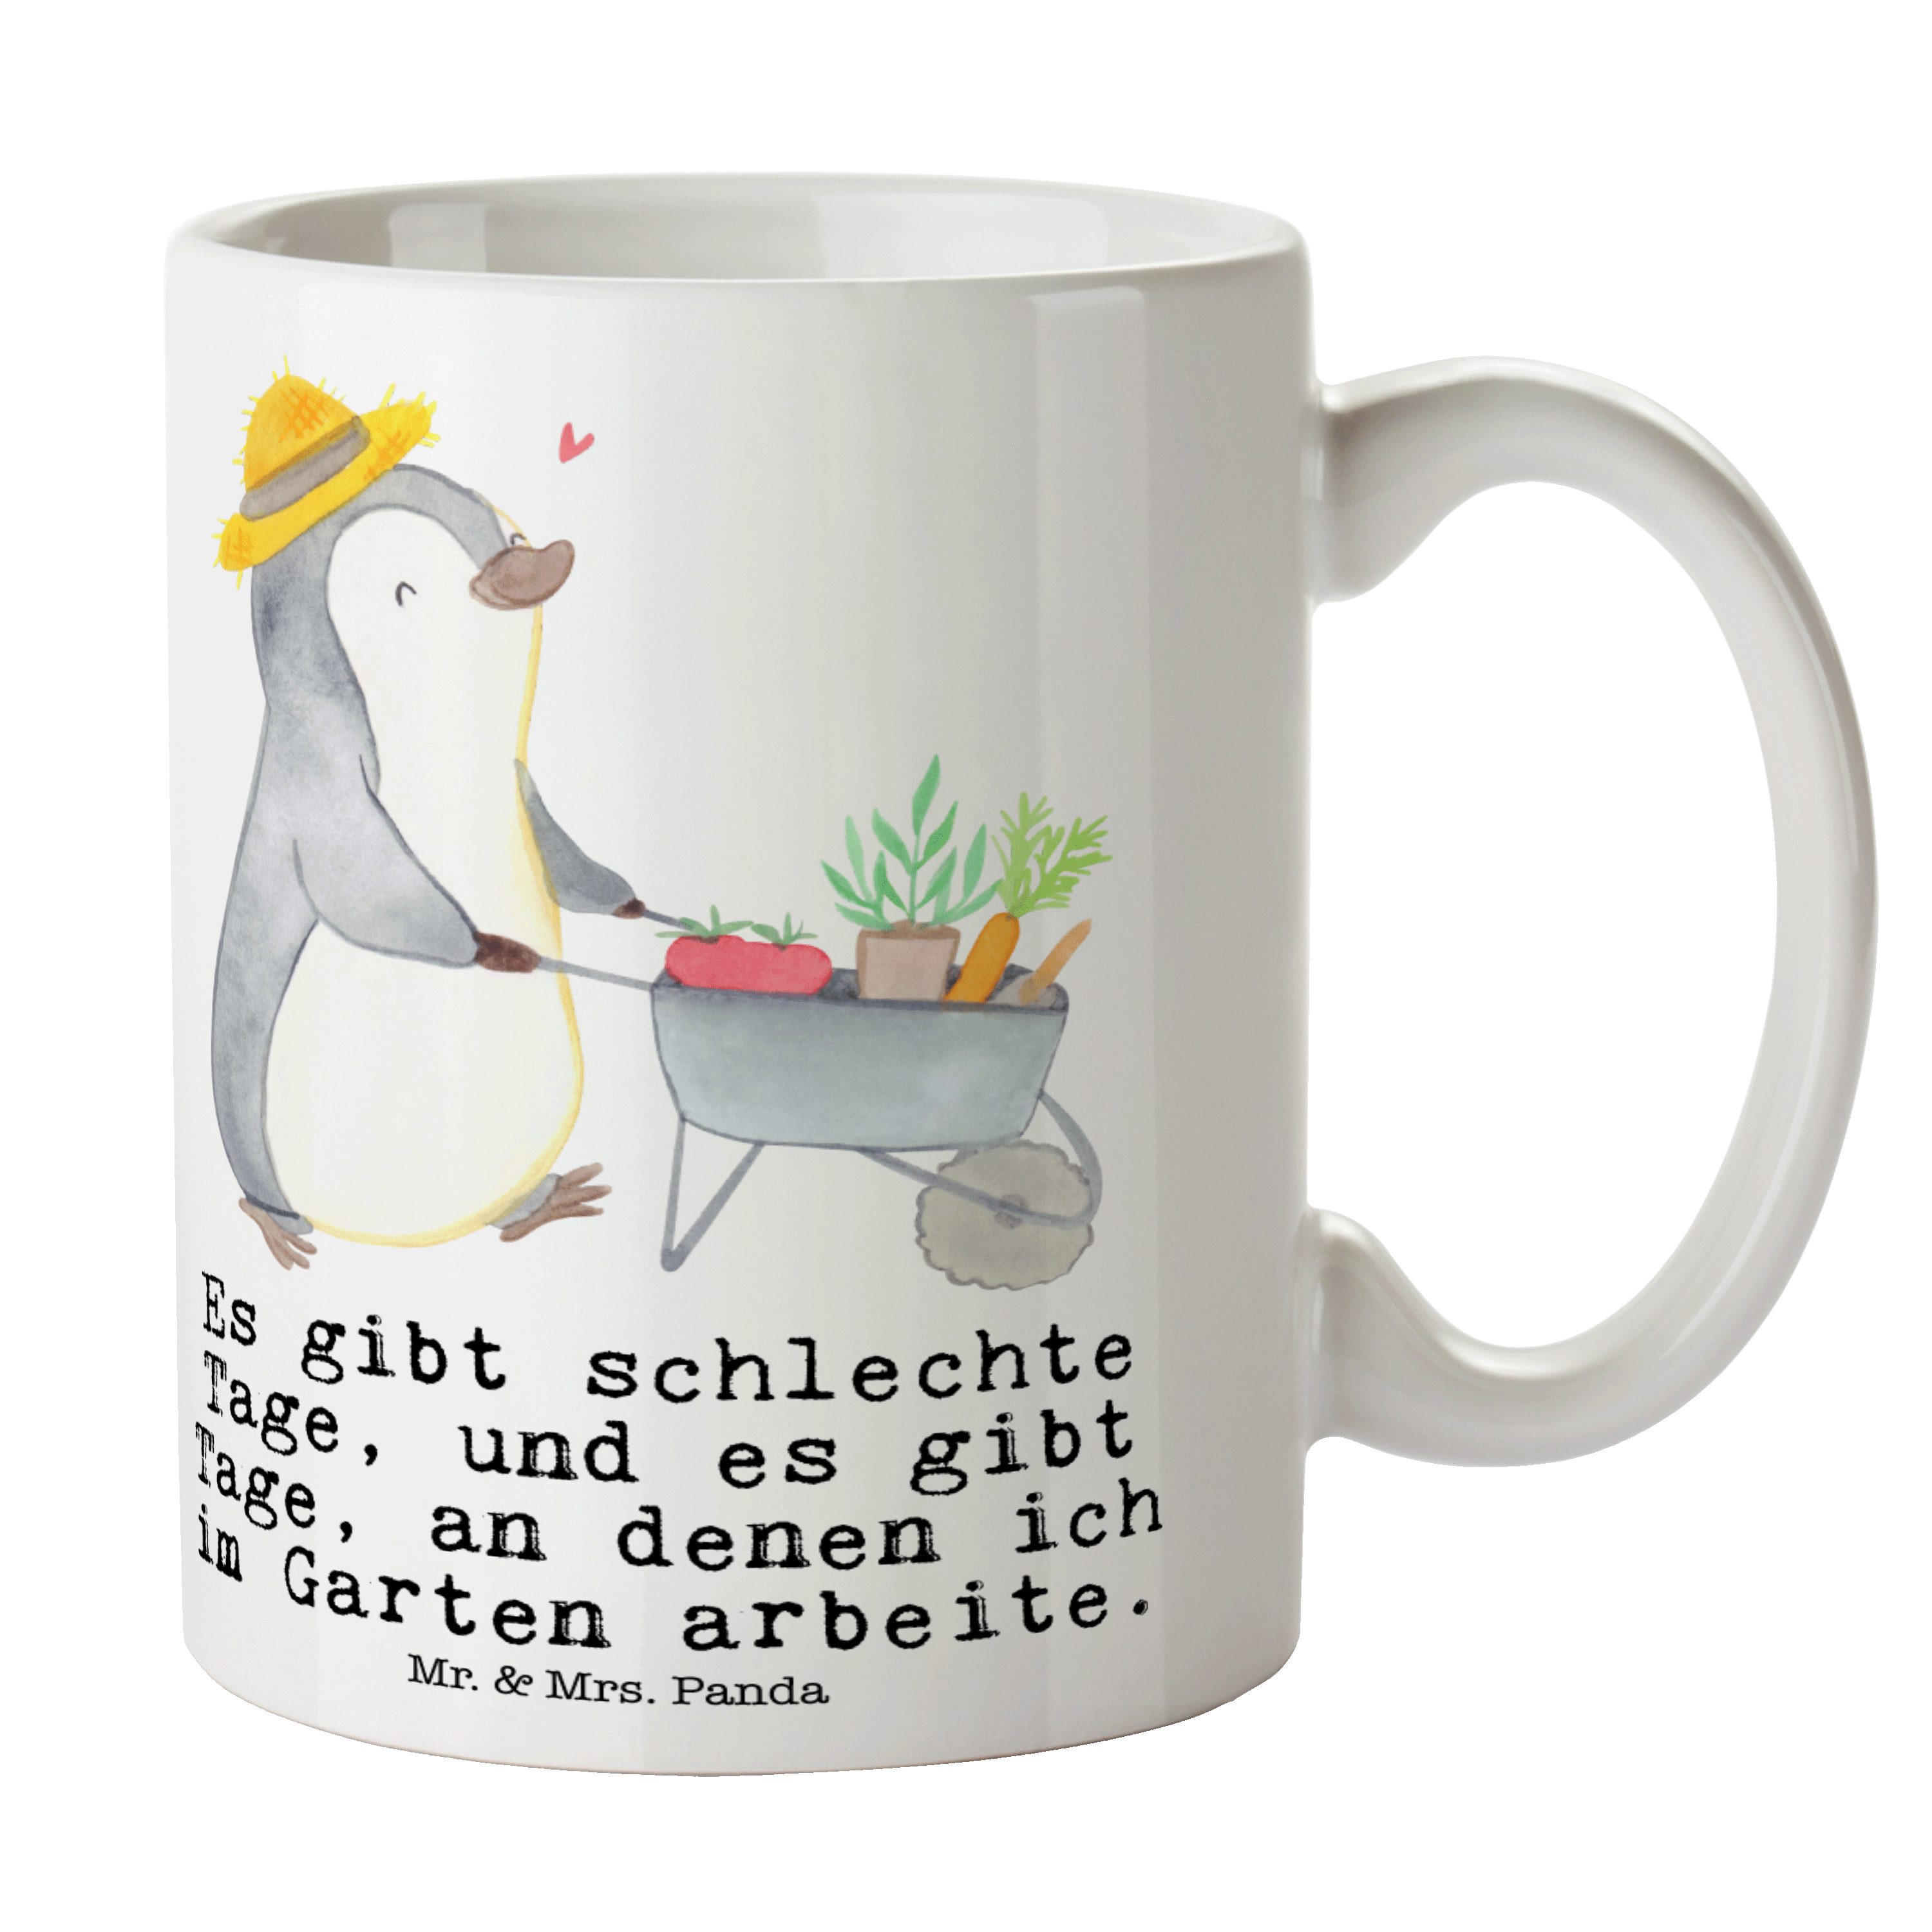 Mr. & Mrs. Panda Tasse Pinguin Gartenarbeit Tage - Weiß - Geschenk, Dankeschön, Auszeichnung, Keramik